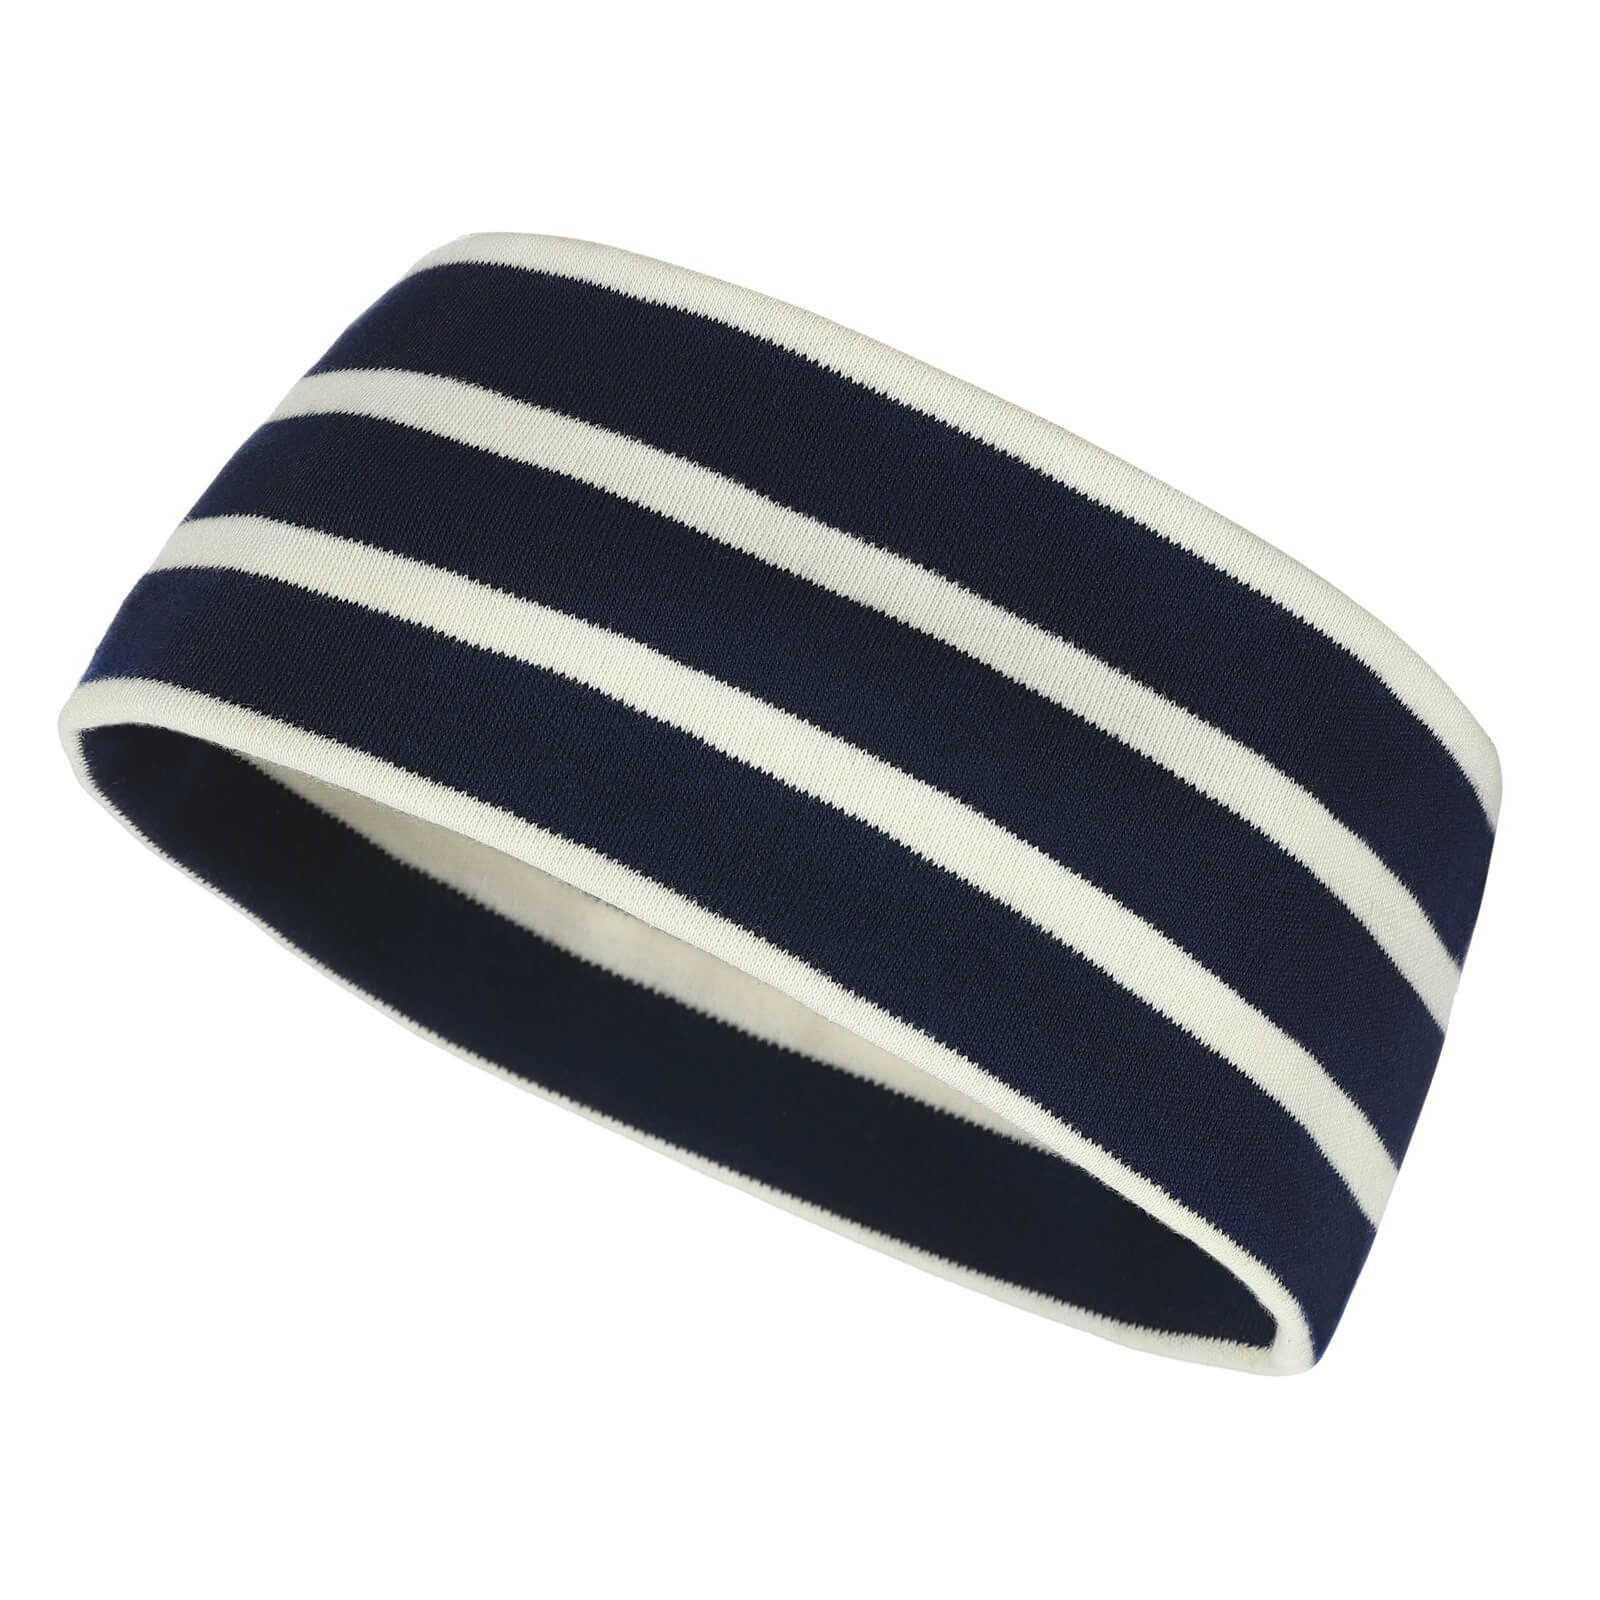 modAS Stirnband Unisex Kopfband Maritim für Kinder und Erwachsene zweilagig Baumwolle (25) blau / natur